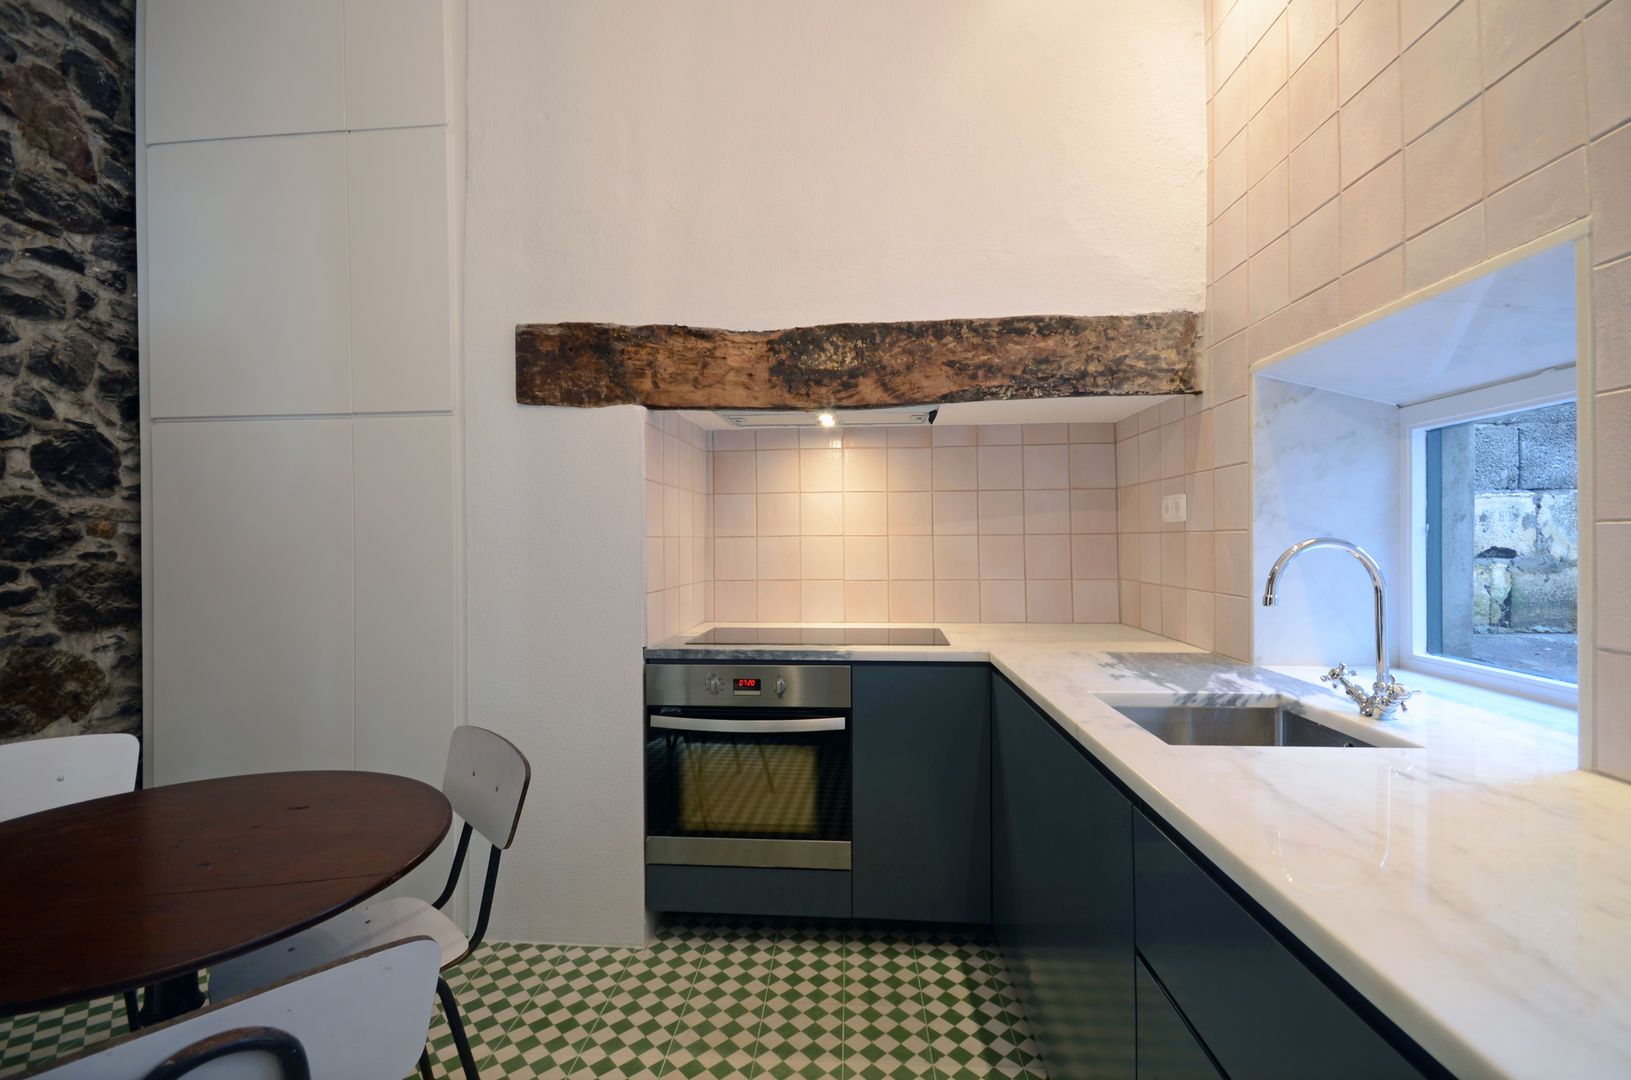 House with Patio, Studio Dois Studio Dois Cocinas modernas: Ideas, imágenes y decoración